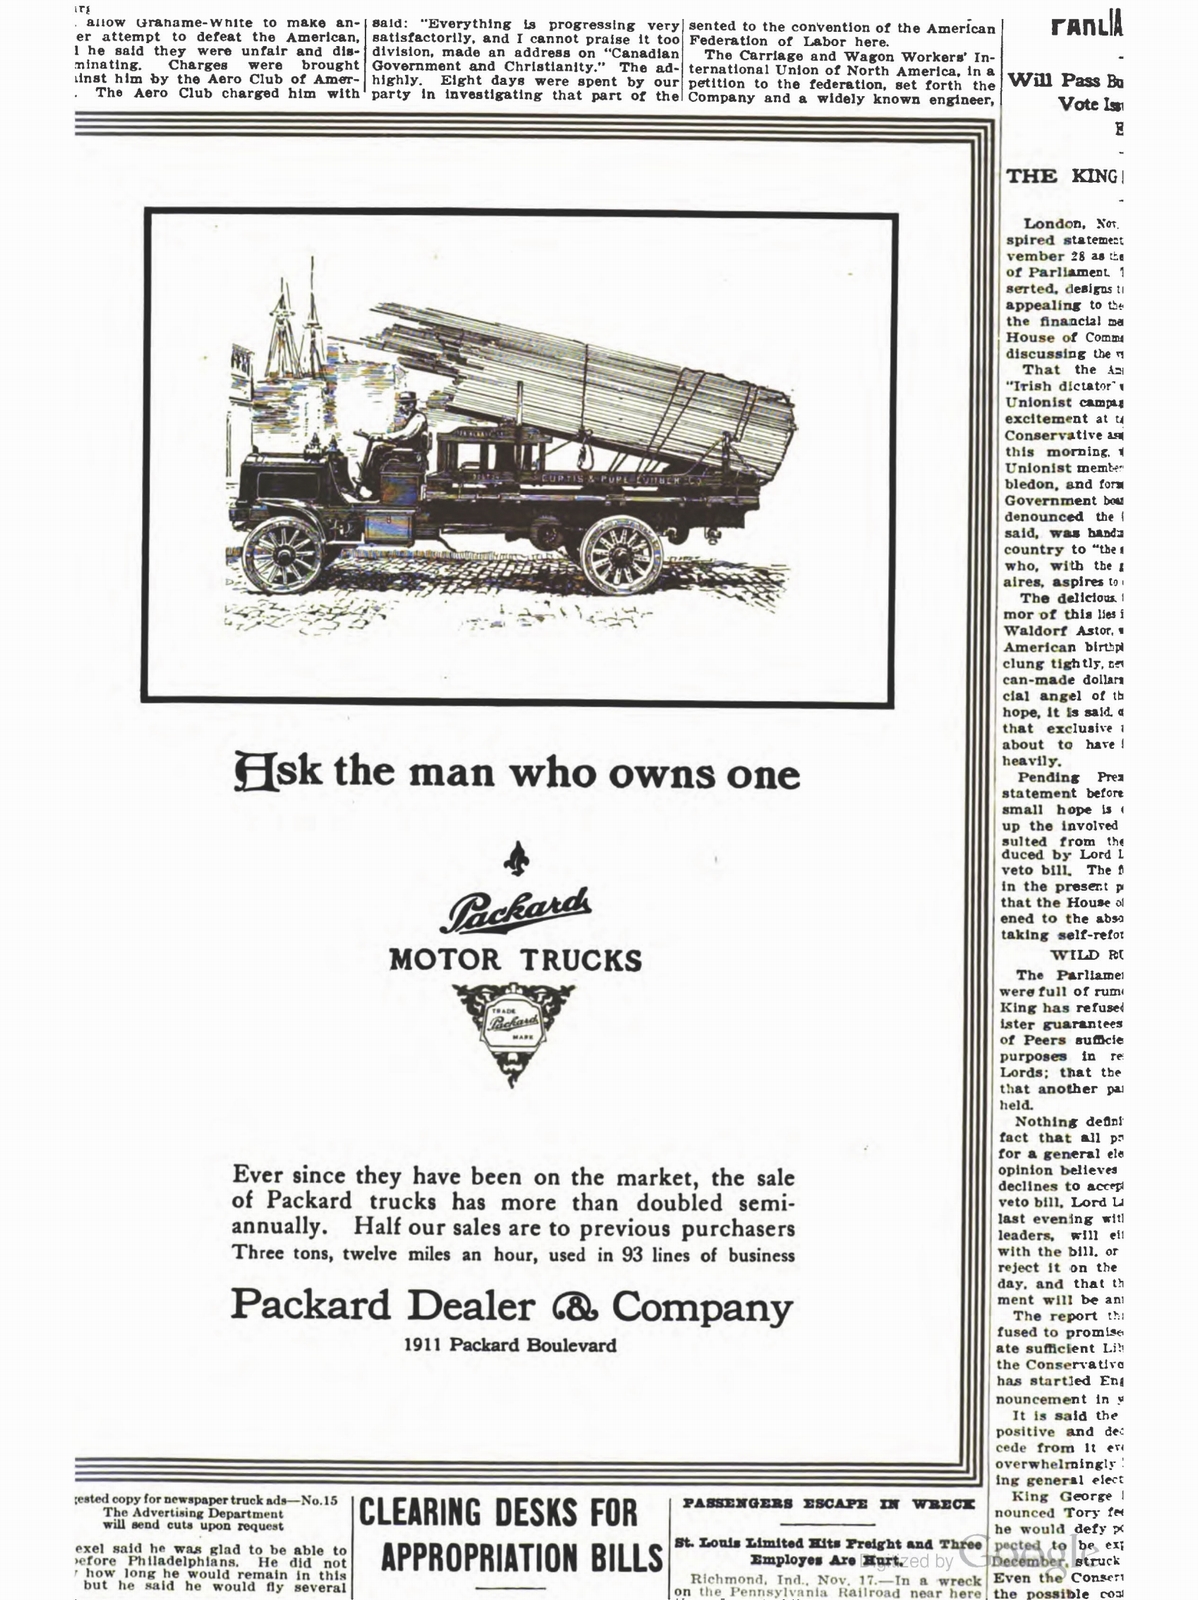 n_1910 'The Packard' Newsletter-226.jpg